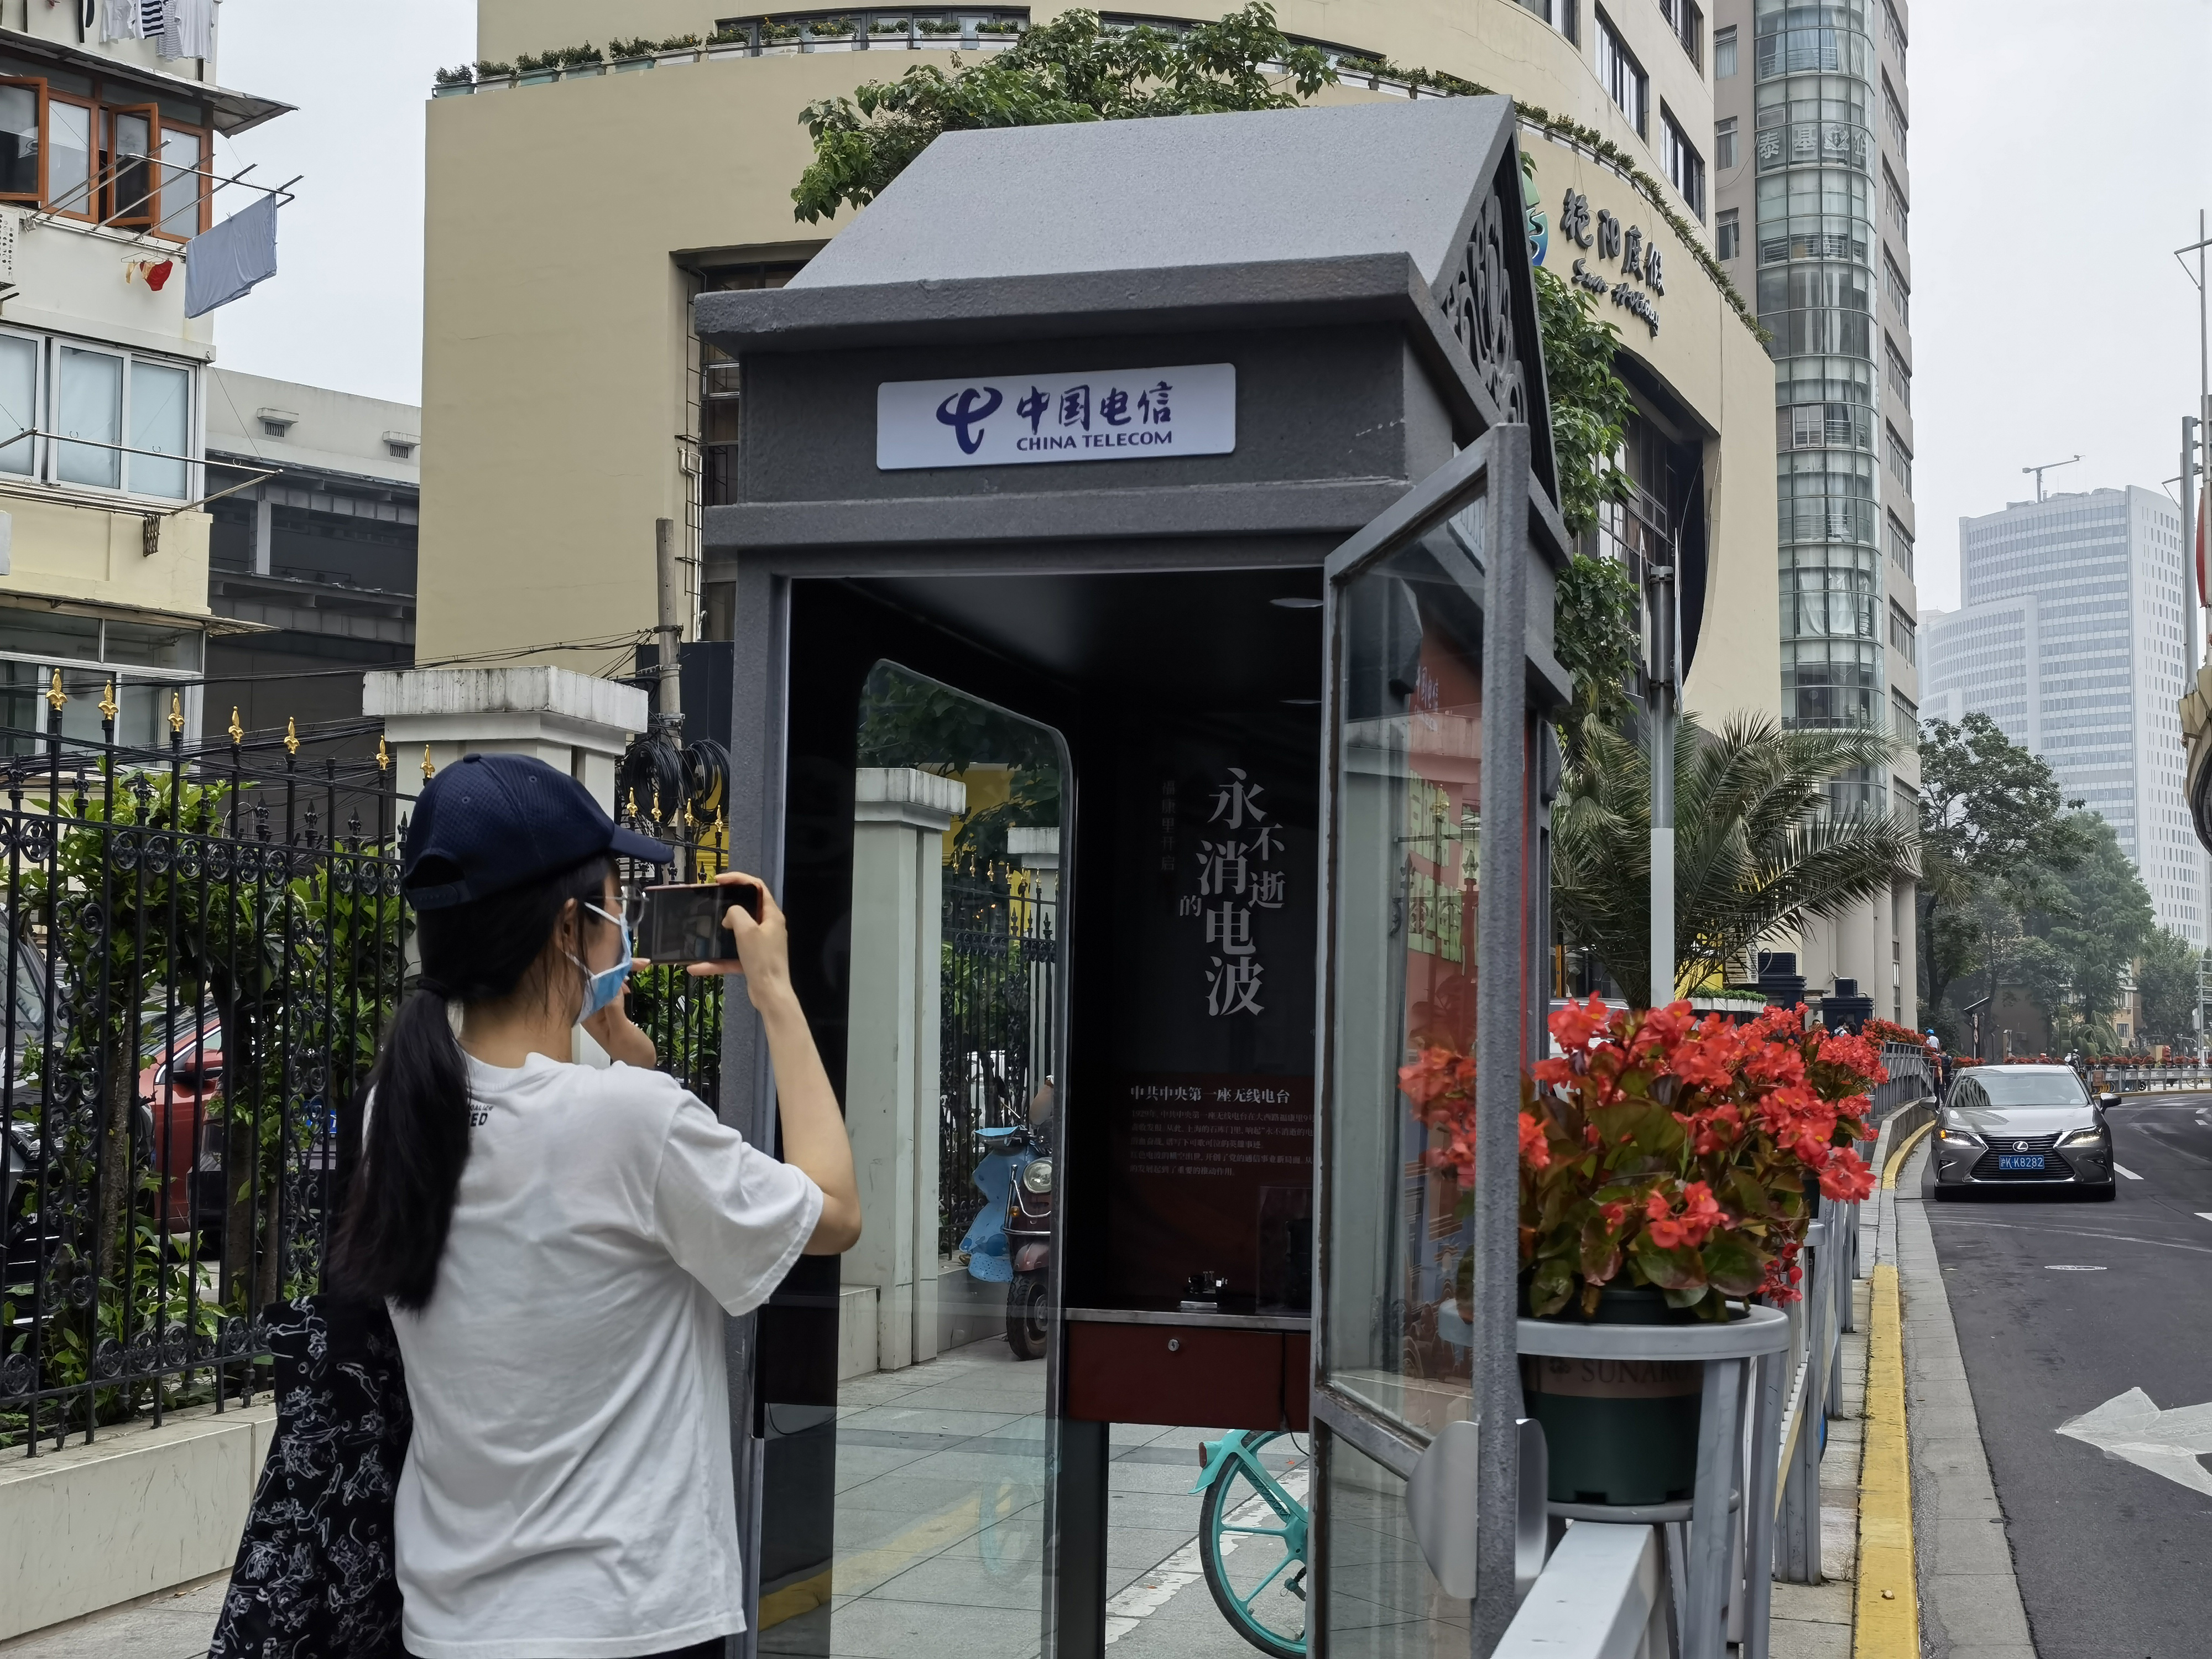 上海公用电话亭成传承红色文化新载体